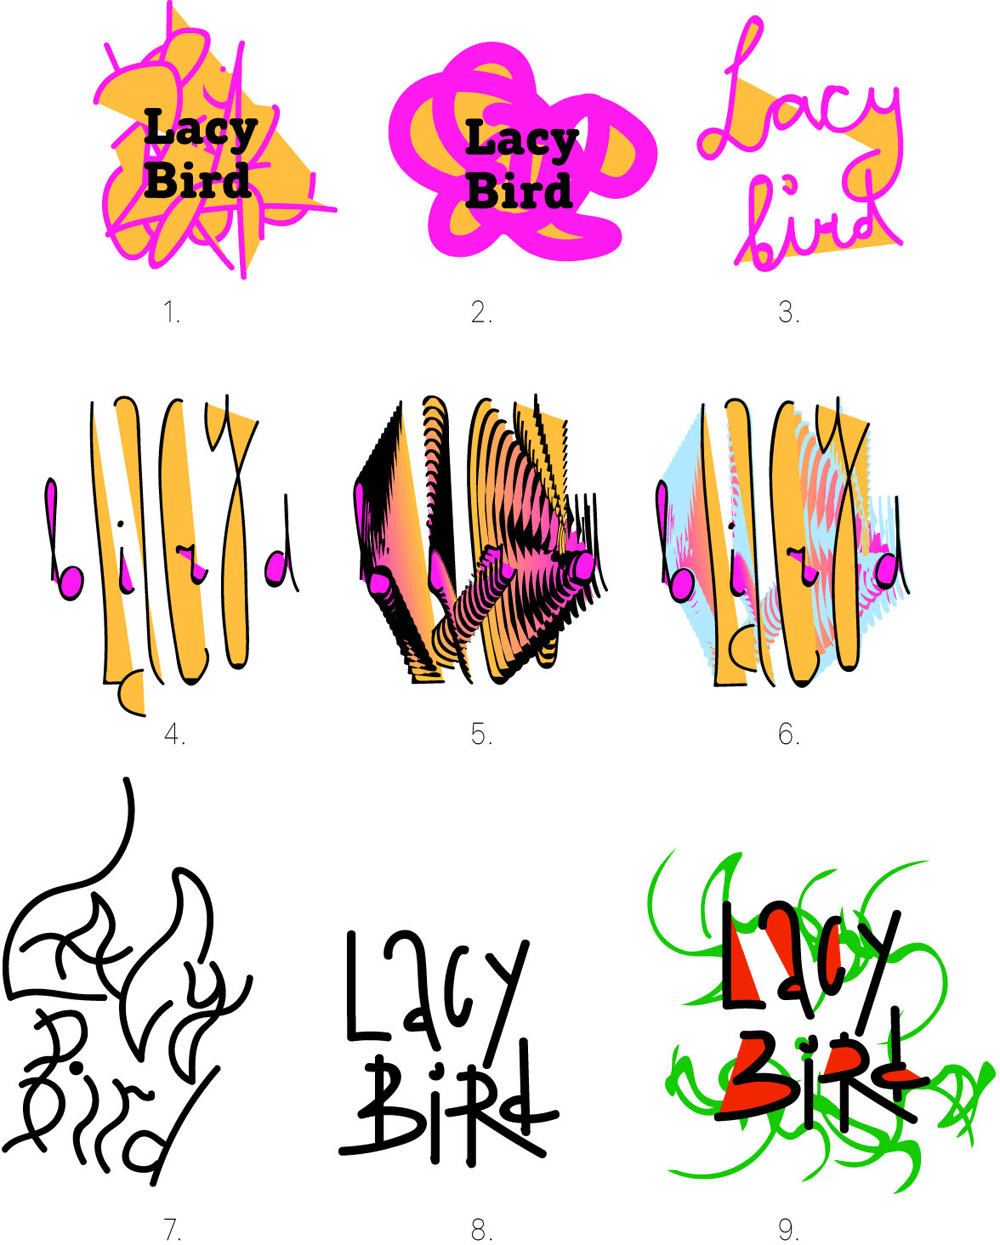 lacy bird process 06